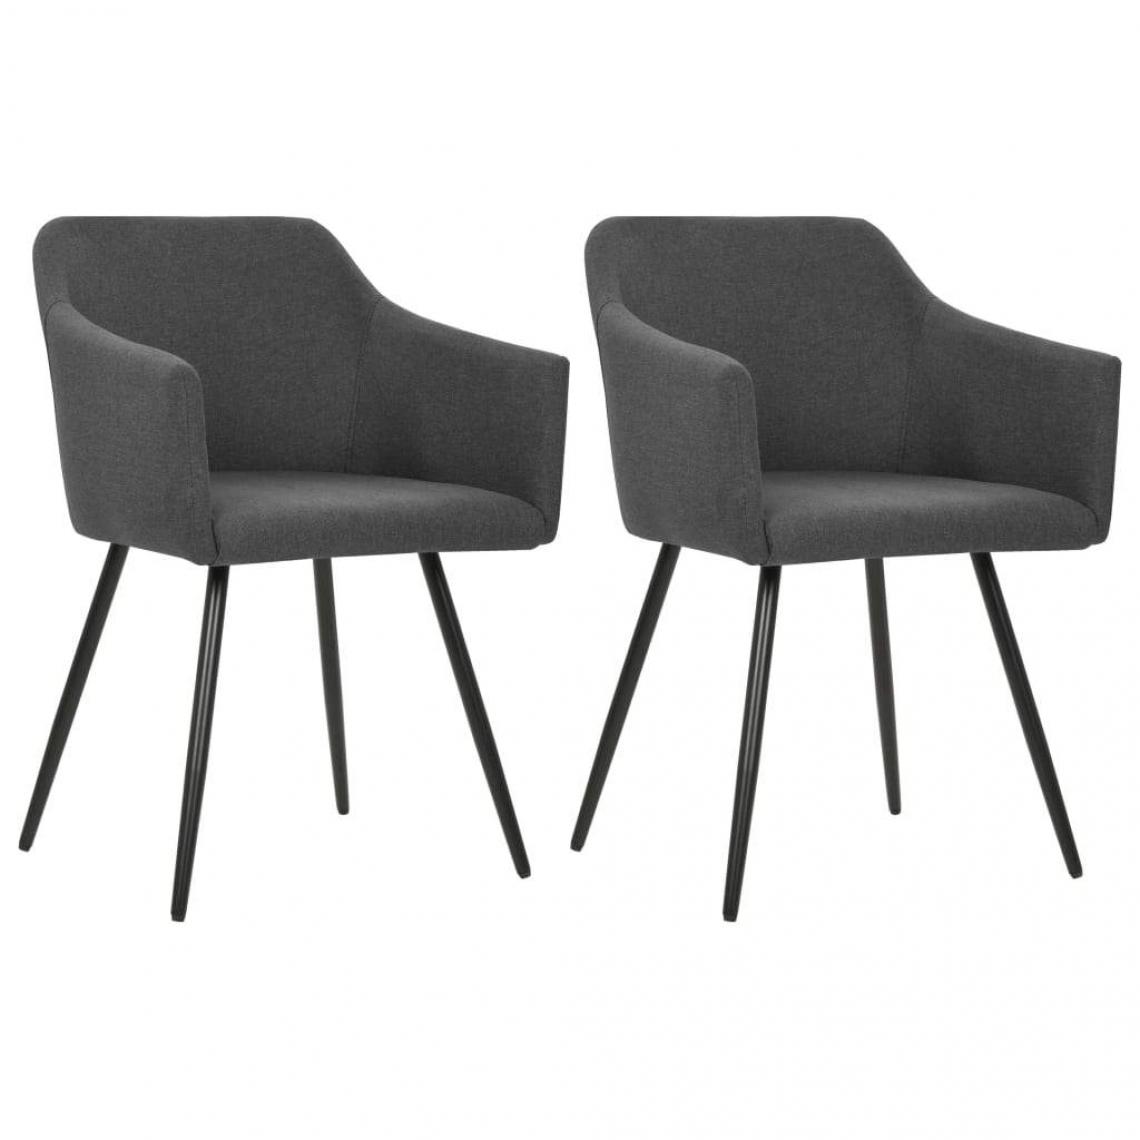 Decoshop26 - Lot de 2 chaises de salle à manger cuisine design moderne tissu gris foncé CDS020536 - Chaises